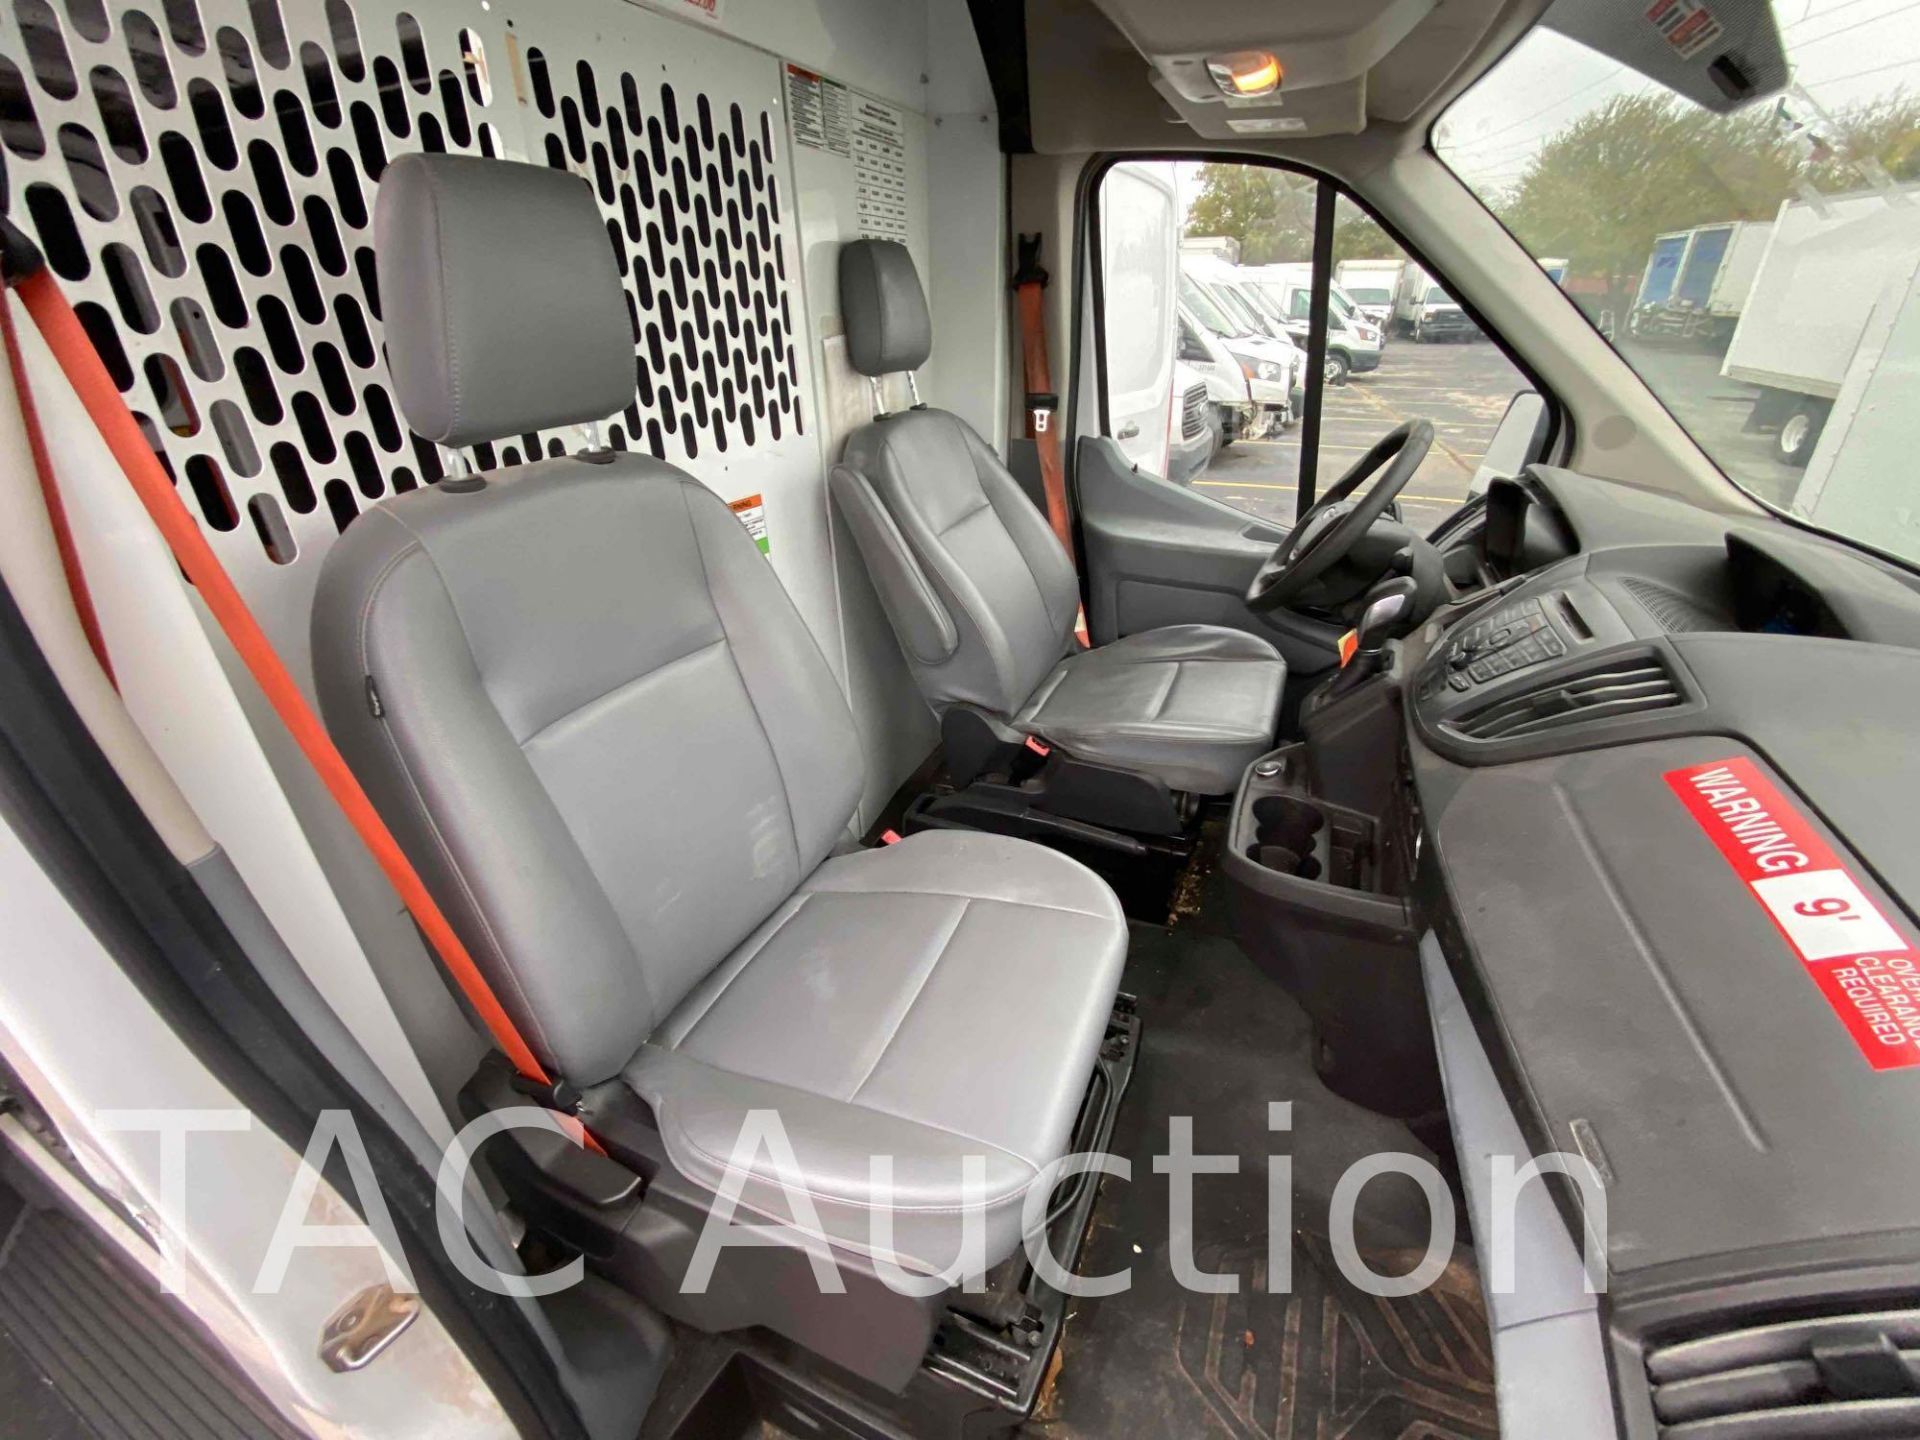 2019 Ford Transit 150 Cargo Van - Image 22 of 40